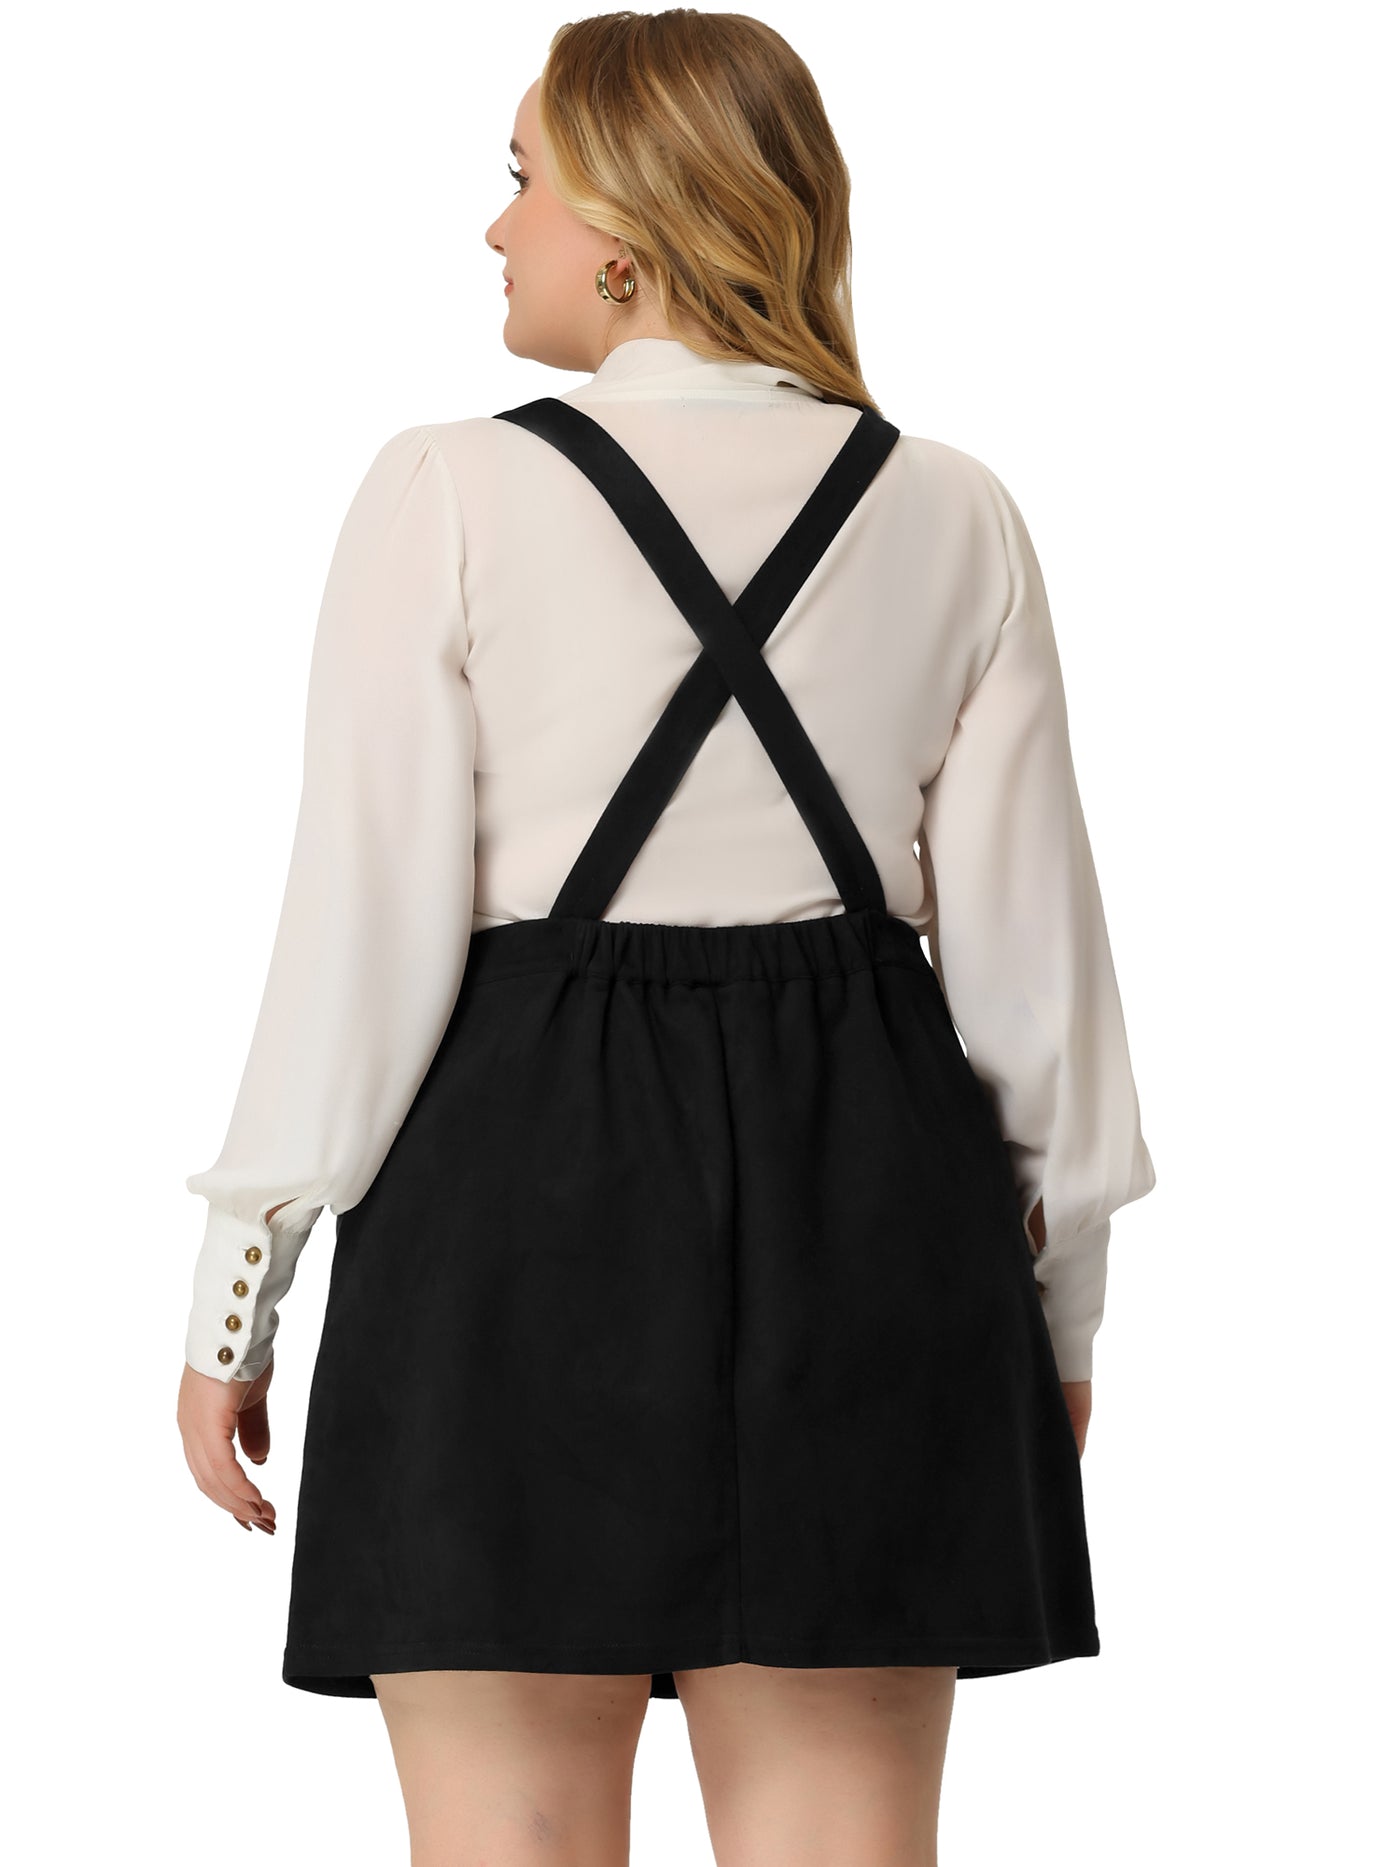 Bublédon A Line Suede Elastic Back Suspender Skirt